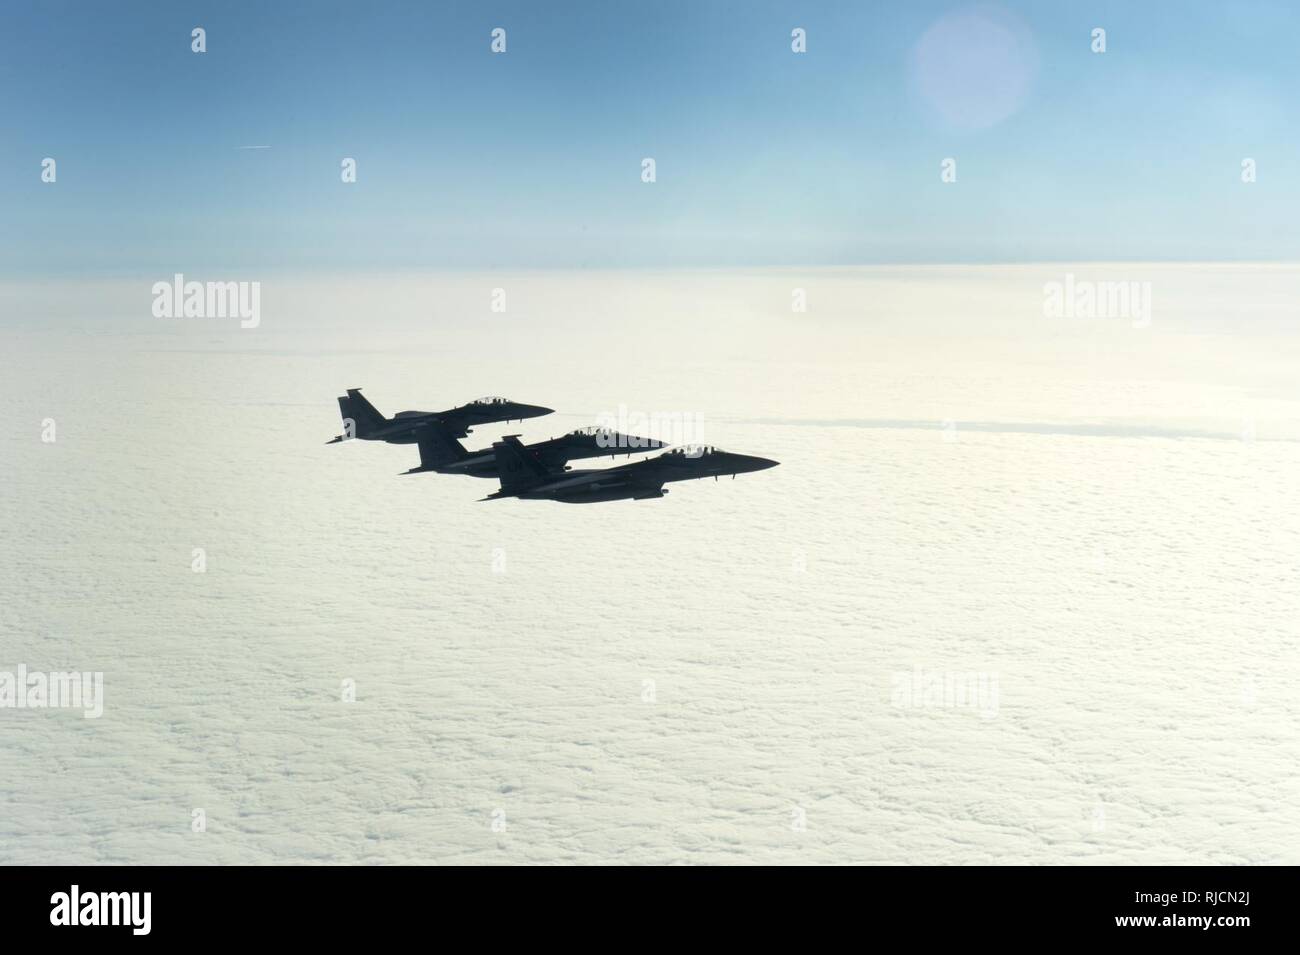 Trois F-15 Eagle de la RAF Lakenheath, Angleterre, voler aux côtés d'un B-52 Stratofortress de Minot Air Force Base, N.D., après un vol d'entraînement sur le Royaume-Uni, le 12 janvier 2018. Avec formation de partenaires, aux nations alliées et d'autres unités de l'US Air Force permet au 5e Bomb Wing de contribuer à préparer et postured forces en Europe. Banque D'Images